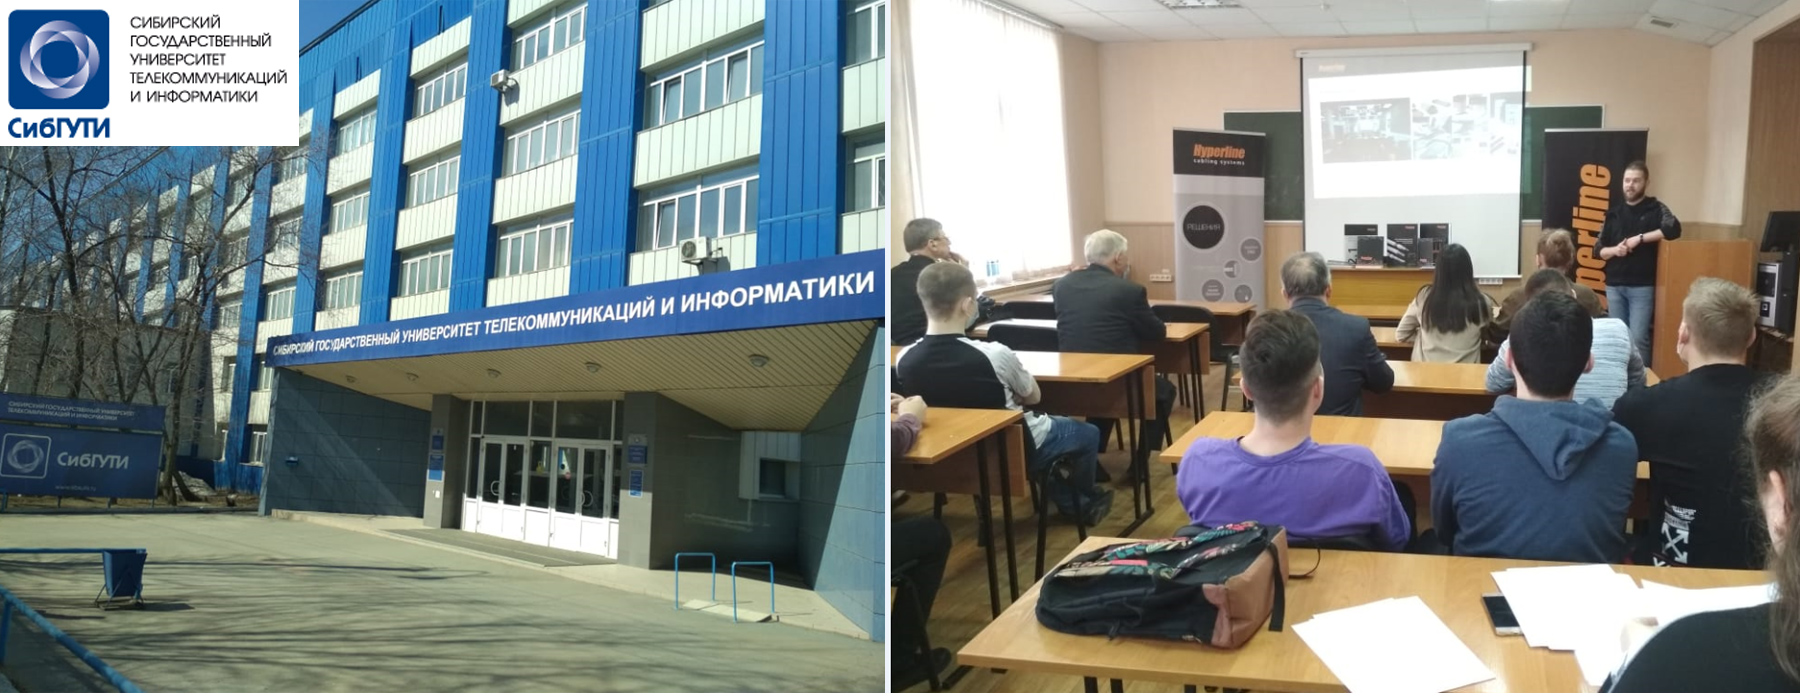 Сибирском Государственном Университете Телекоммуникаций и Информатики (СибГУТИ )